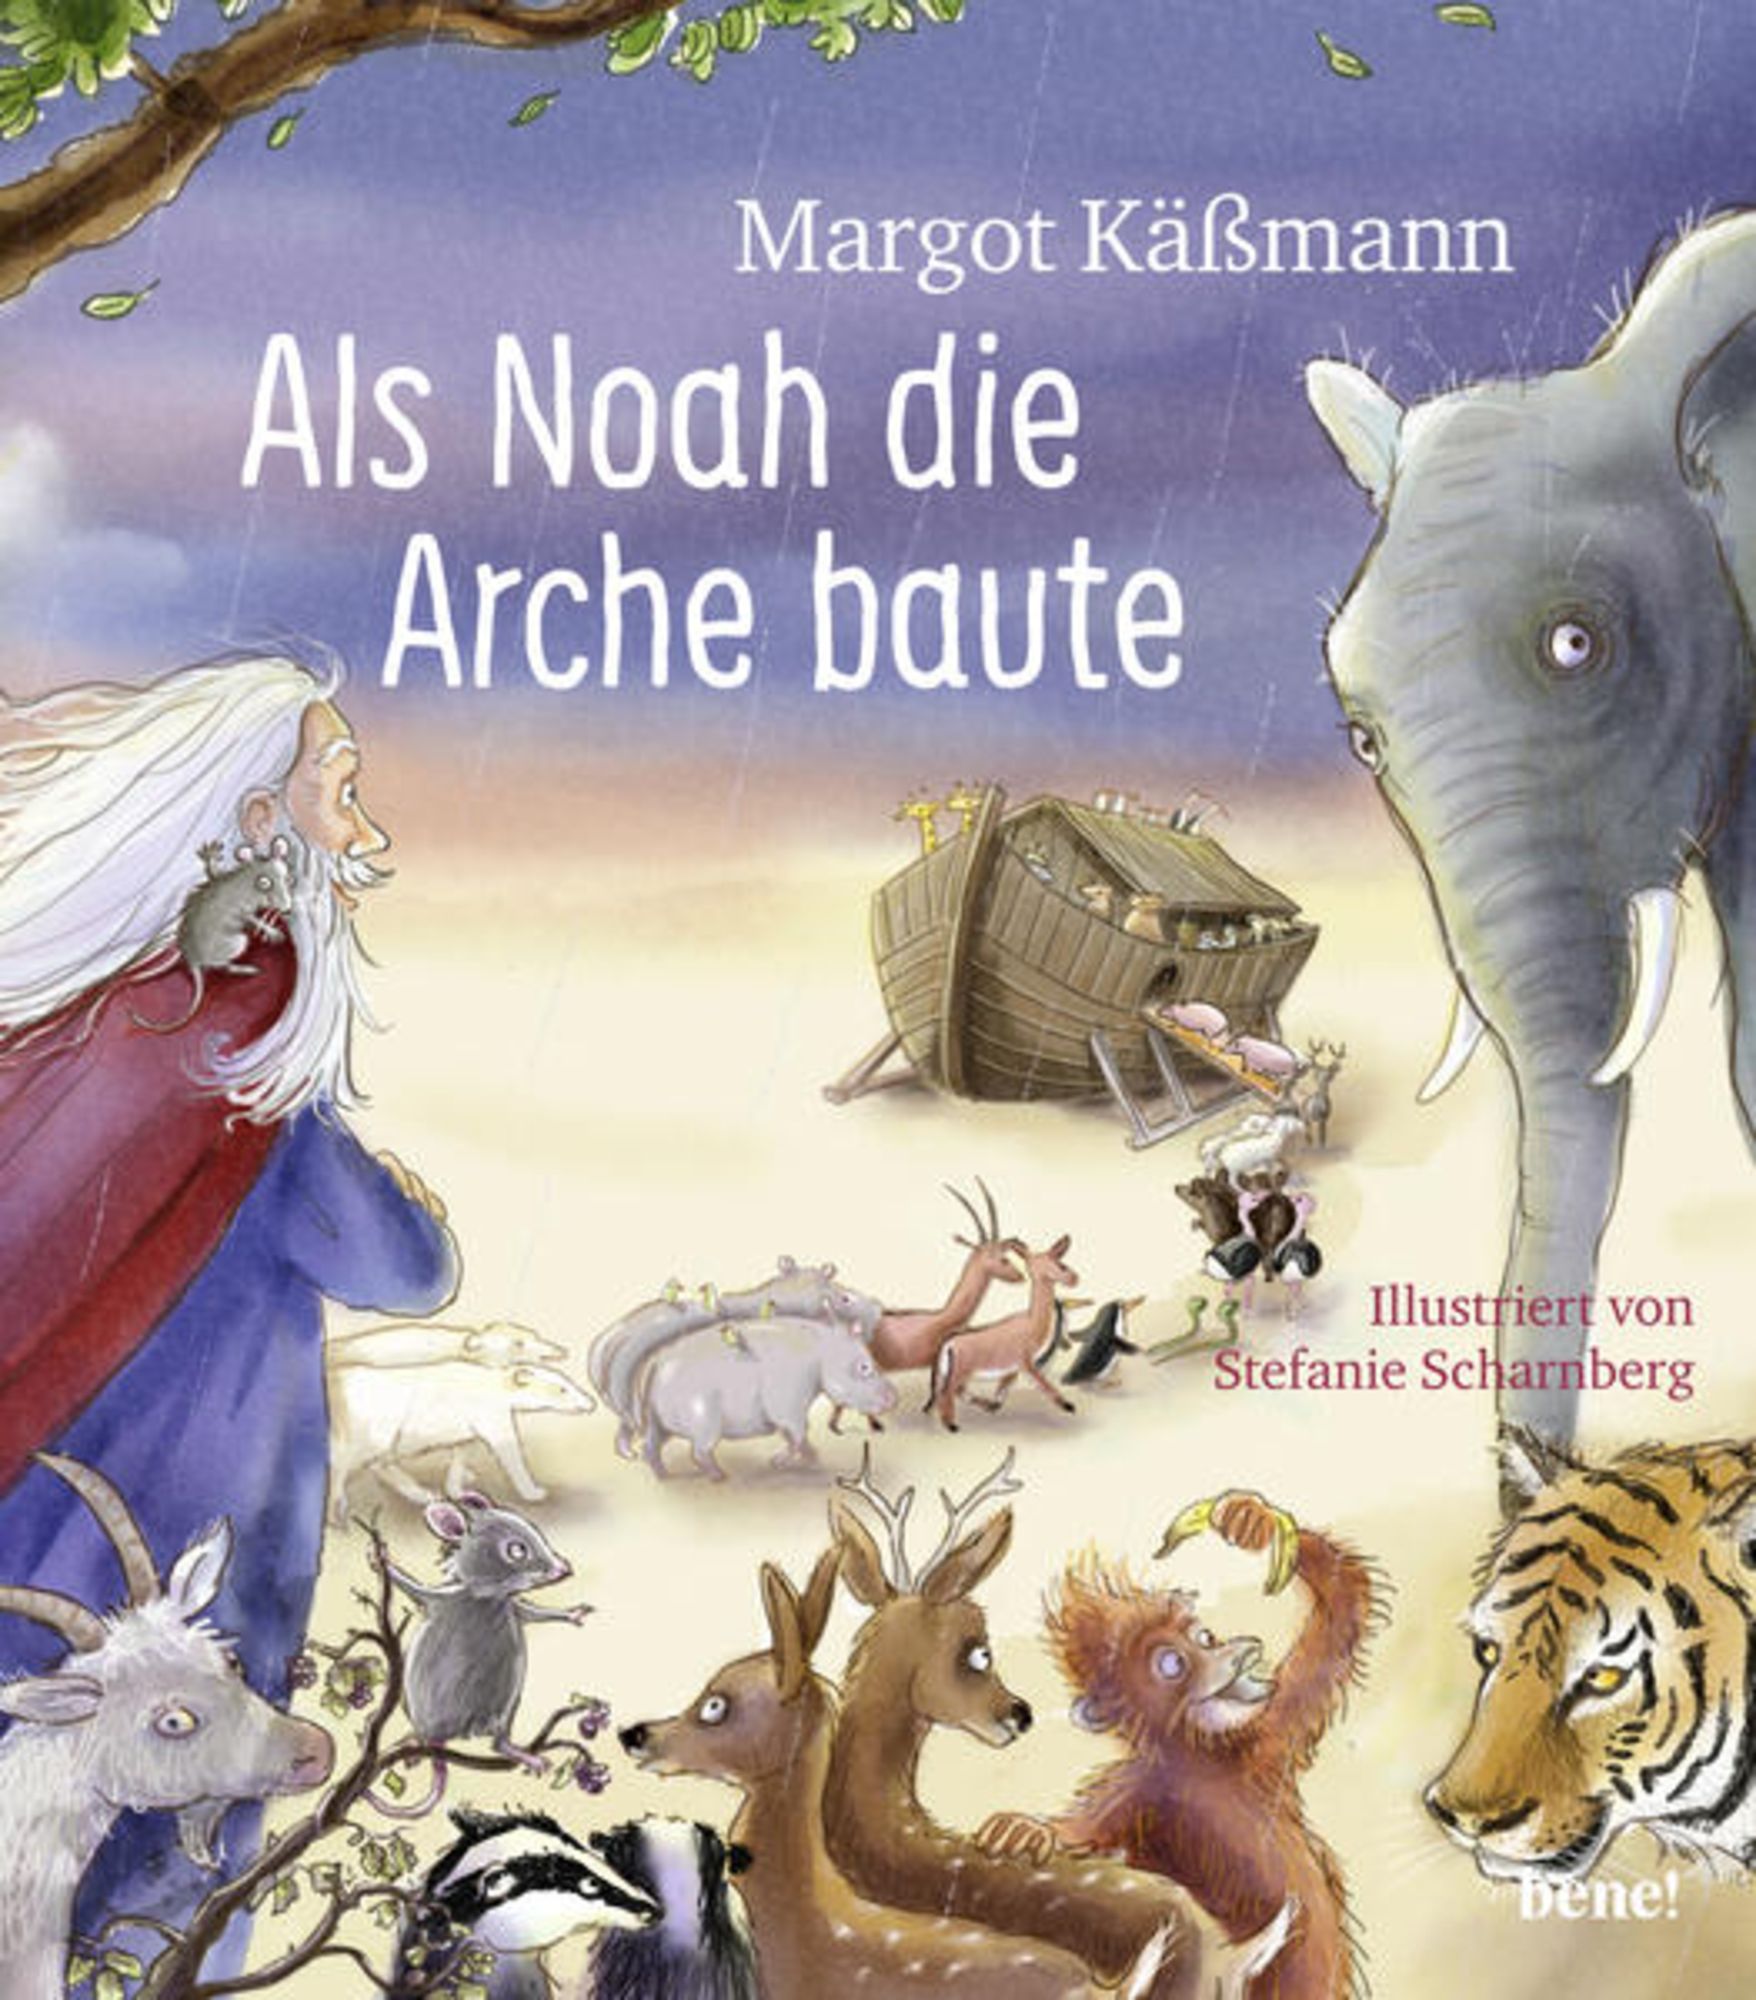 Bilderbuch Als Kinder ein die Kässmann\' baute Arche – - von für Buch \'978-3-96340-126-8\' ab \'Margot Noah - Jahren\' 5